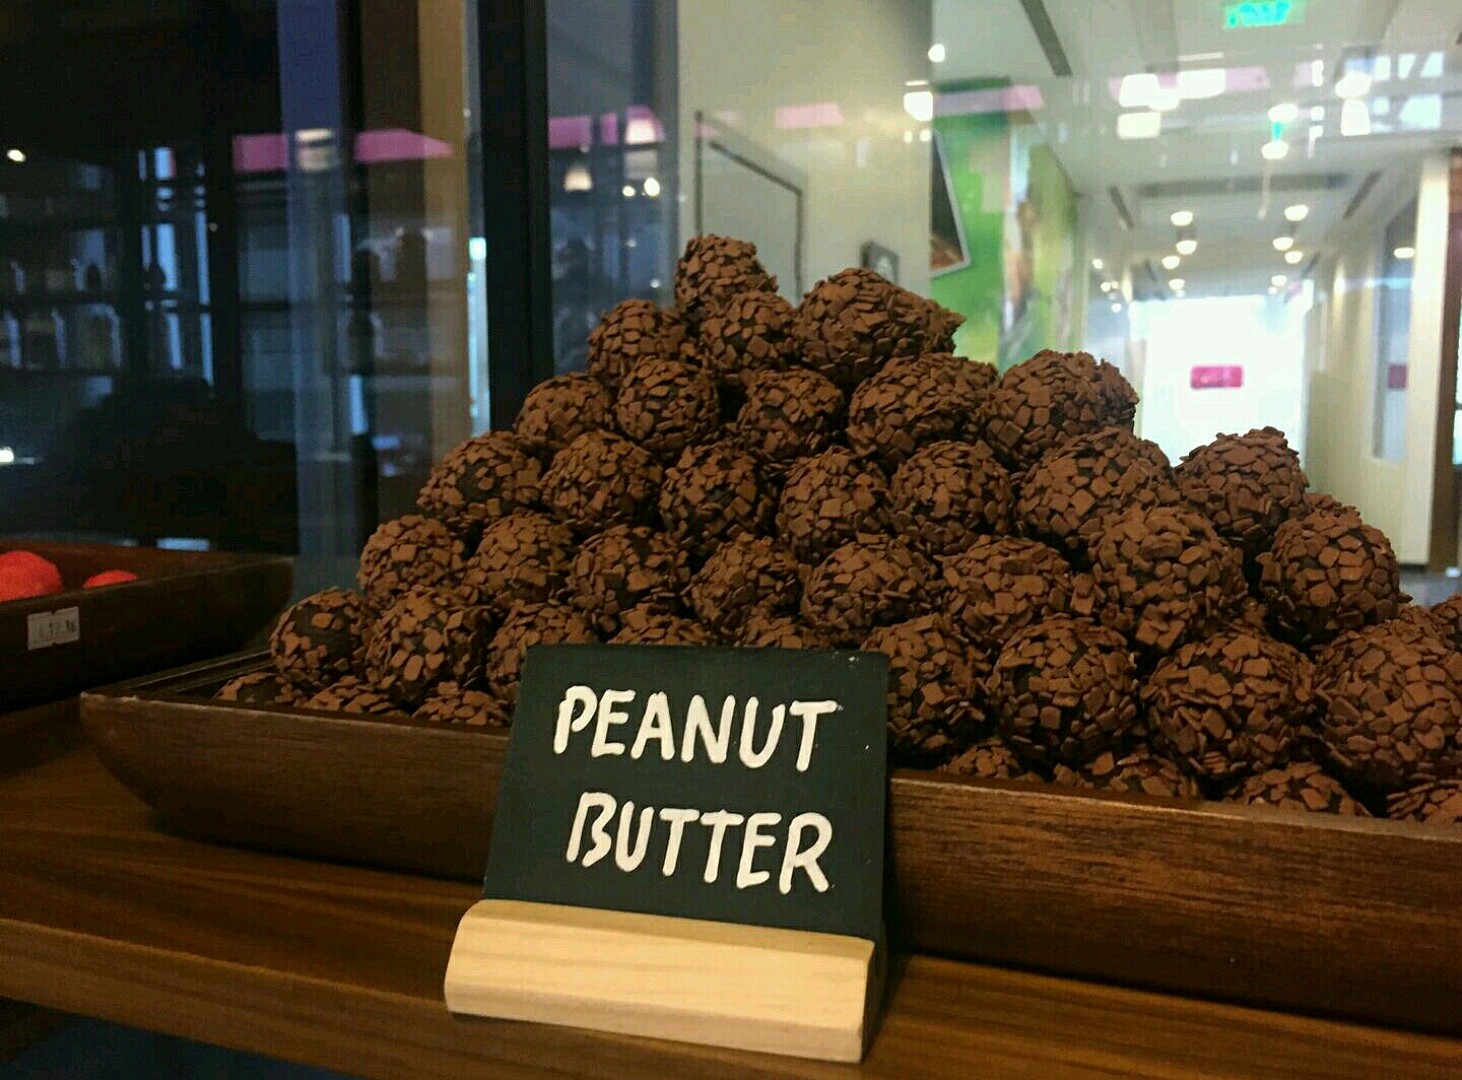 Peanut butter balls @ تروفا للخبز والشوكولاتة - البحرين